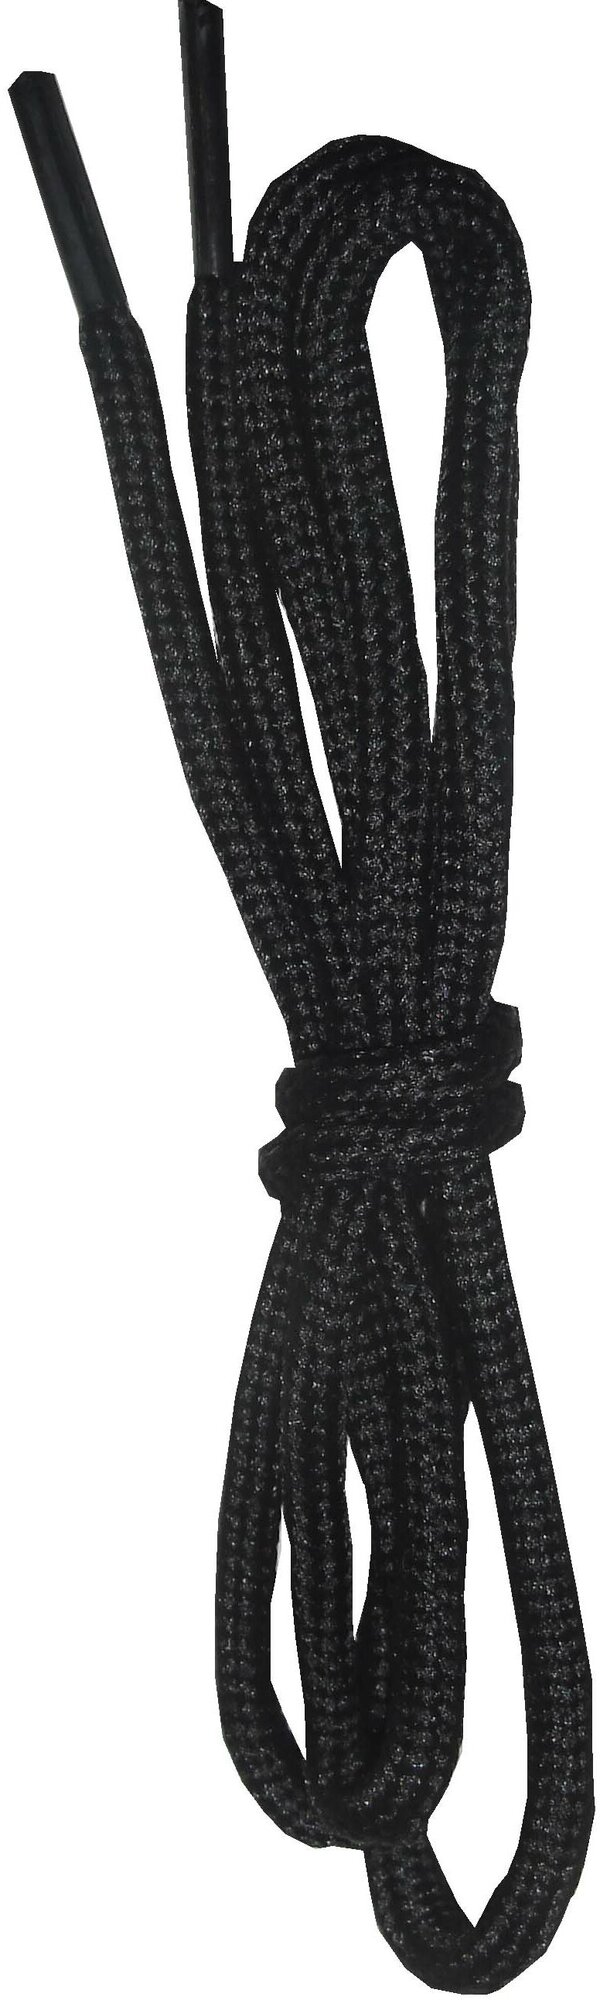 Шнурки орион 90см тонкие черные